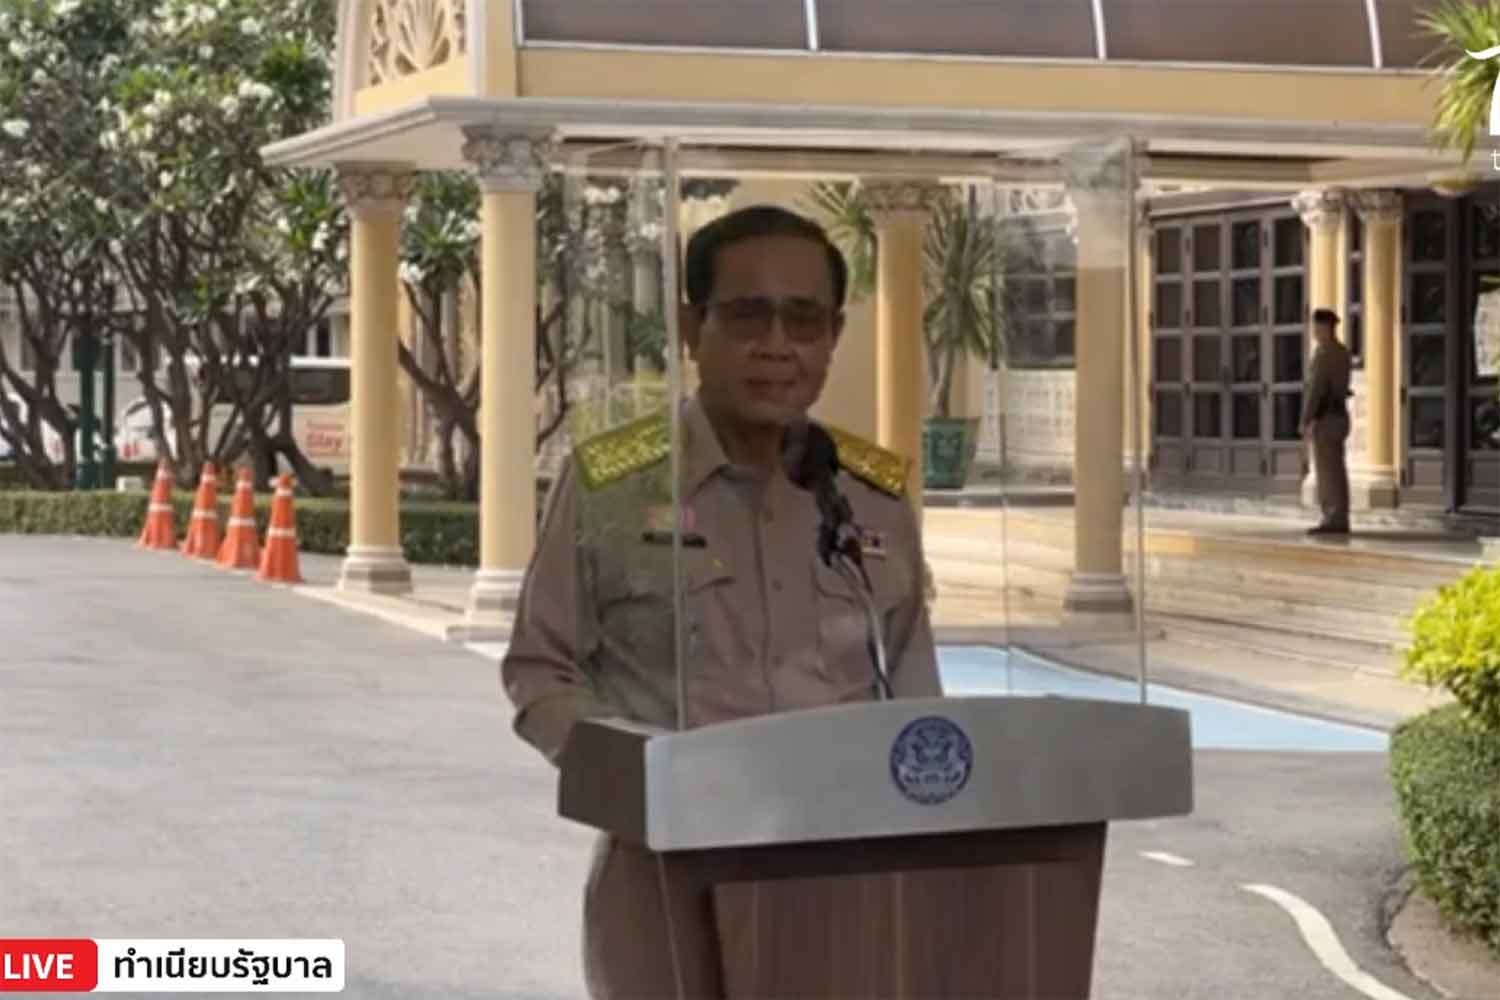 Thái Lan phê duyệt vaccine ngừa Covid-19 của Sinovac, Thủ tướng Prayut Chan-o-cha đề nghị tiêm đầu tiên